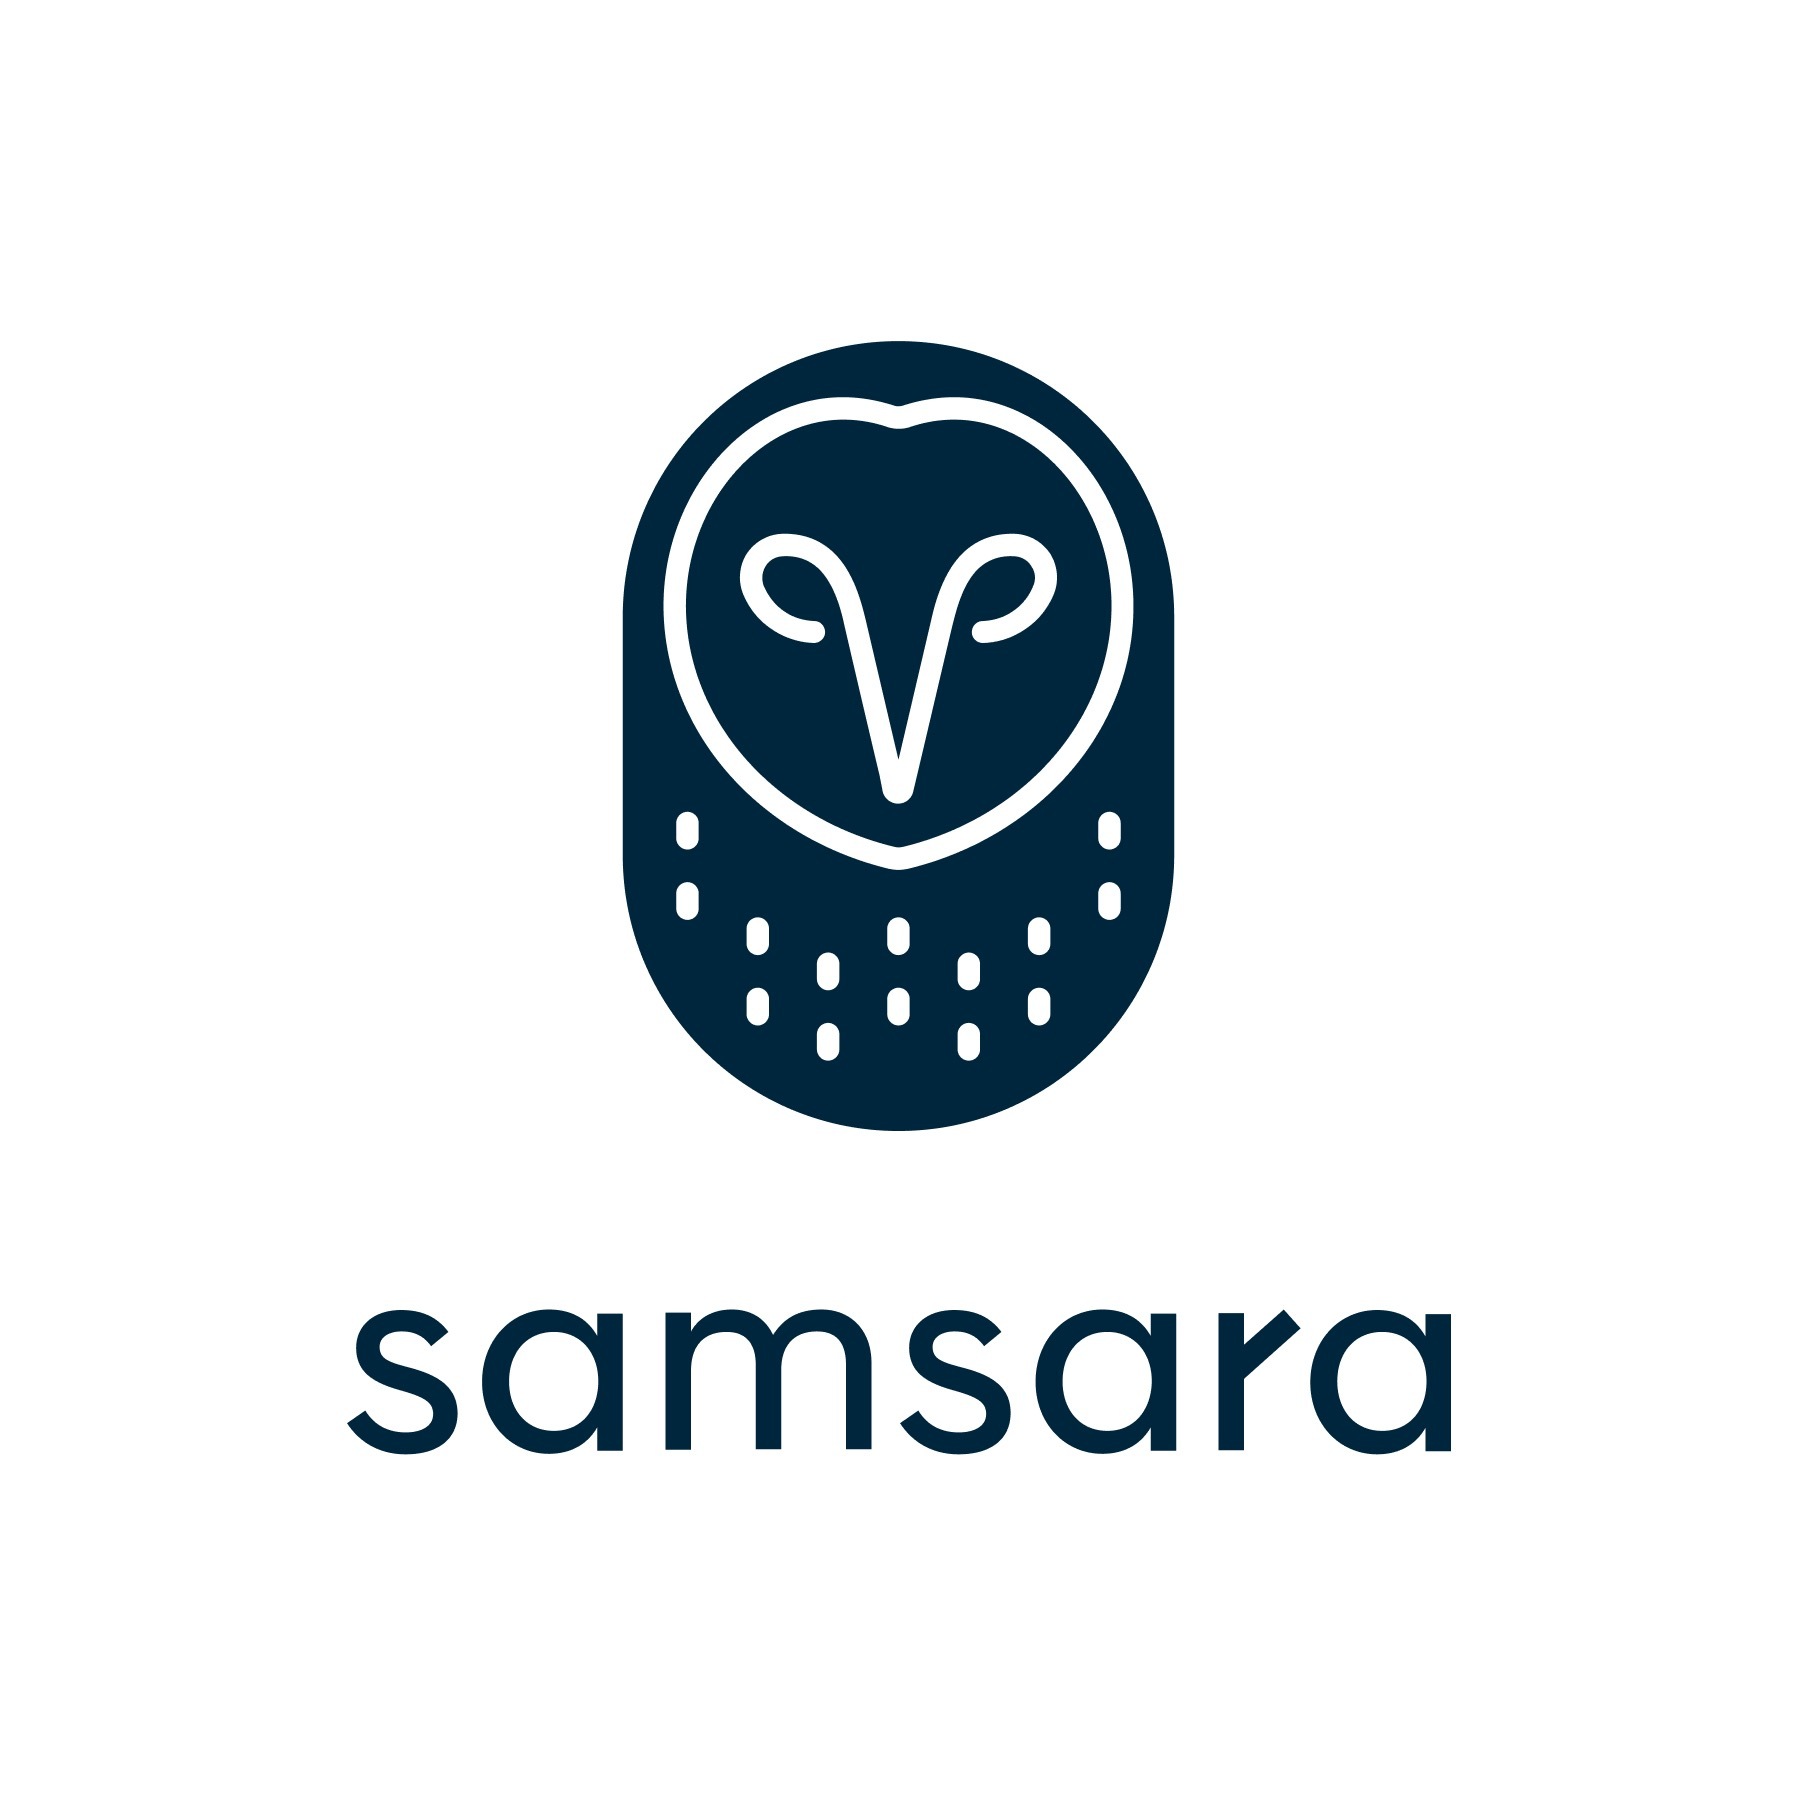 samsara_logoa.jpg